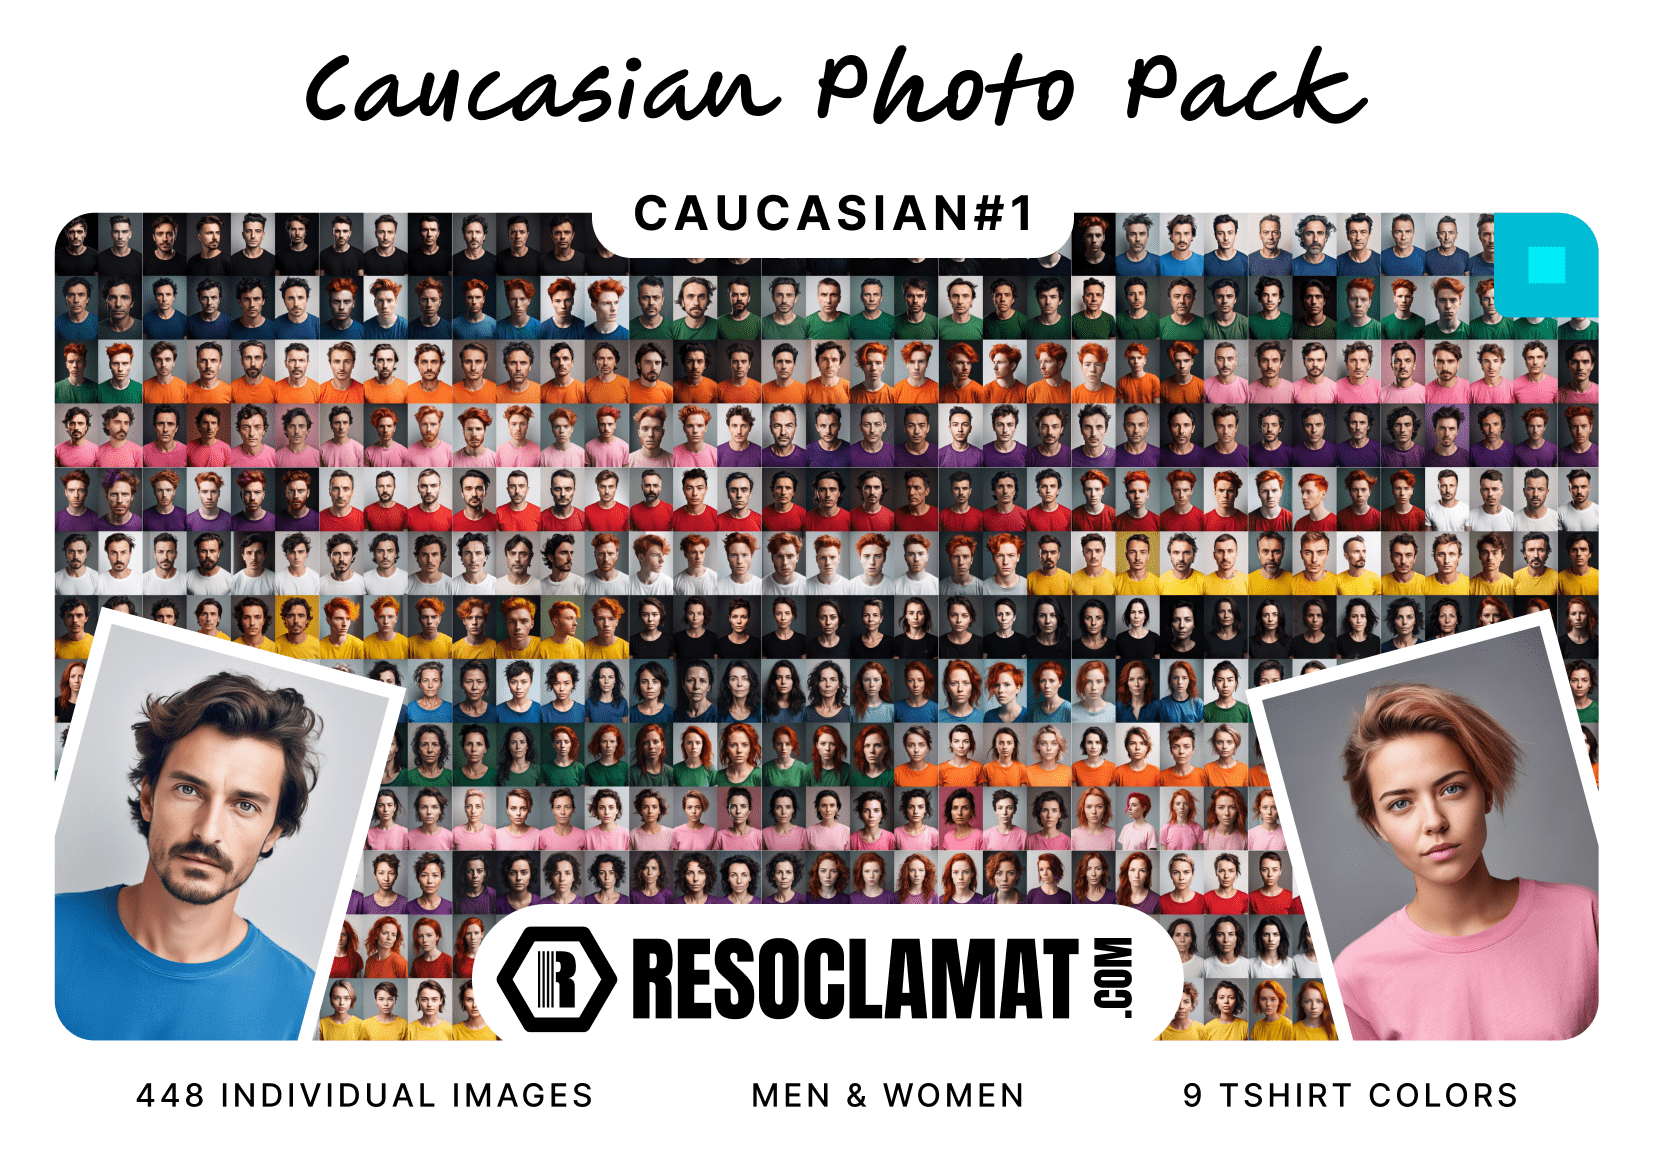 Caucasian Photo Pack 1 (CAUCASIAN#1)